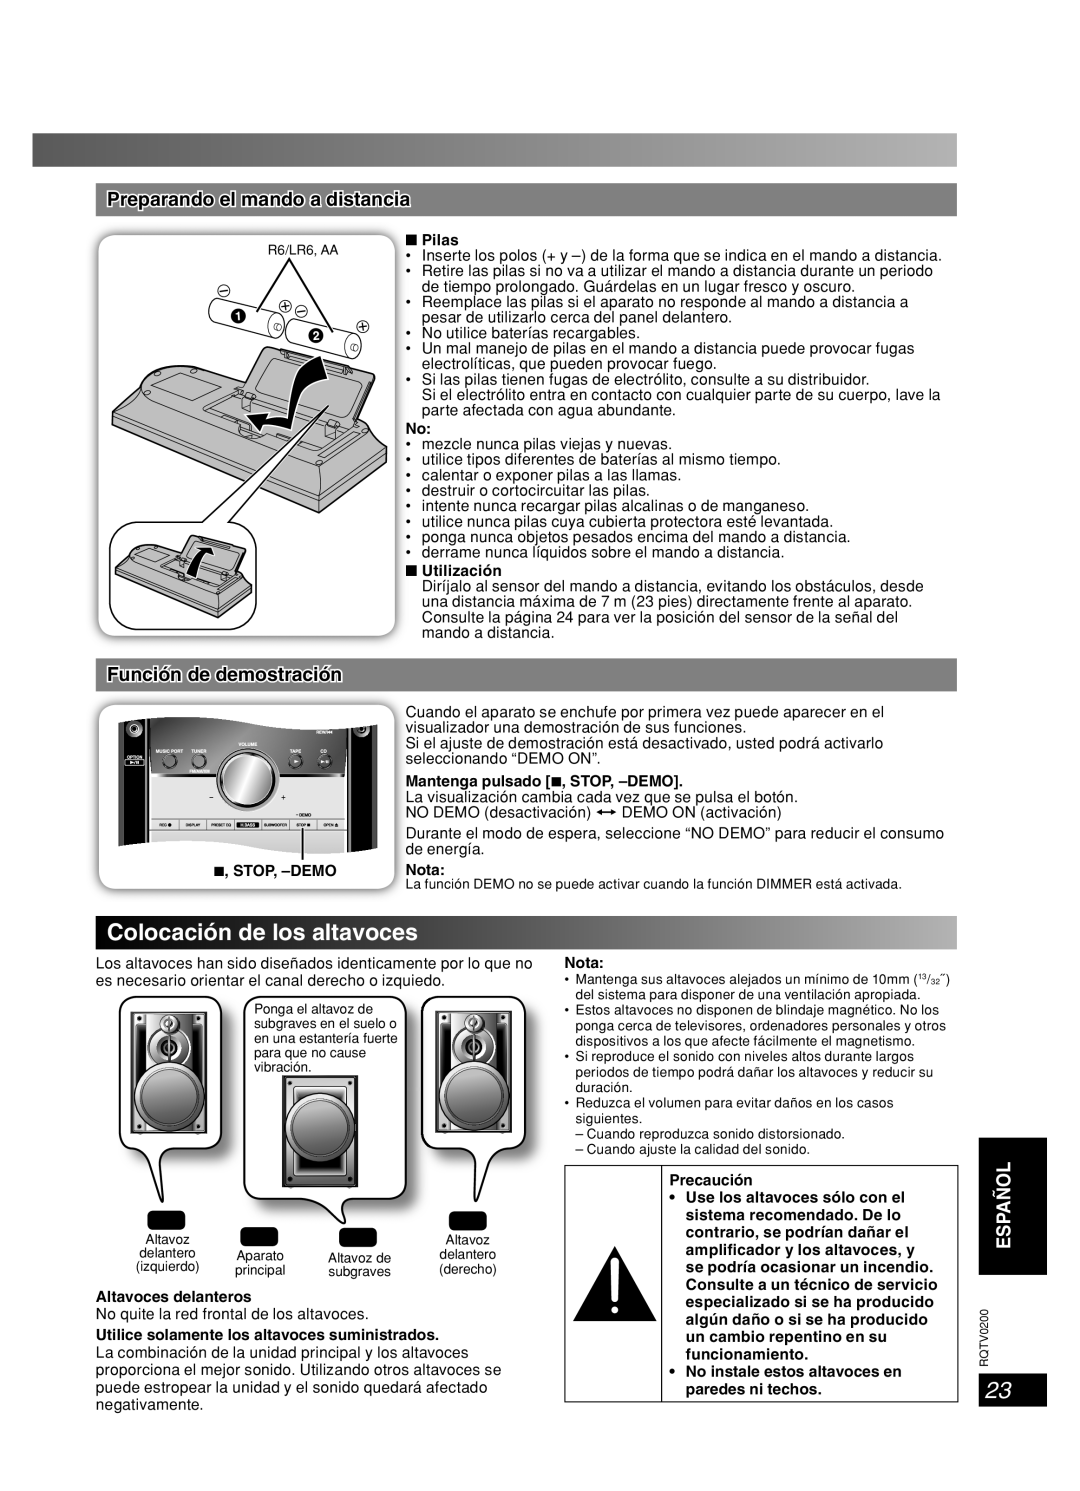 Panasonic SC-AK750, 377 Colocación de los altavoces, Preparando el mando a distancia, Función de demostración, Français 